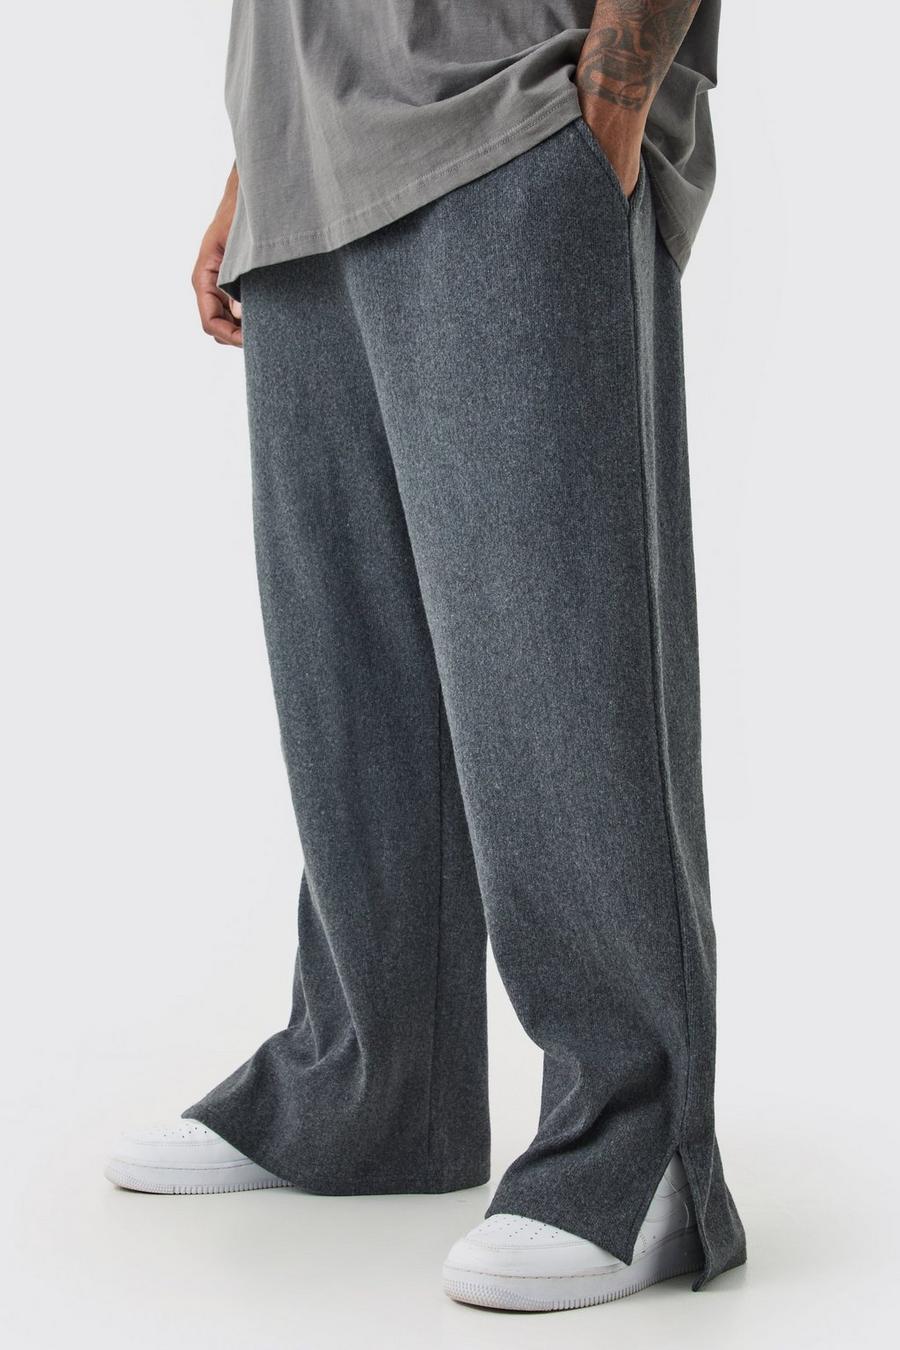 Pantaloni tuta Plus Size a coste spazzolate rilassate con spacco sul fondo, Charcoal